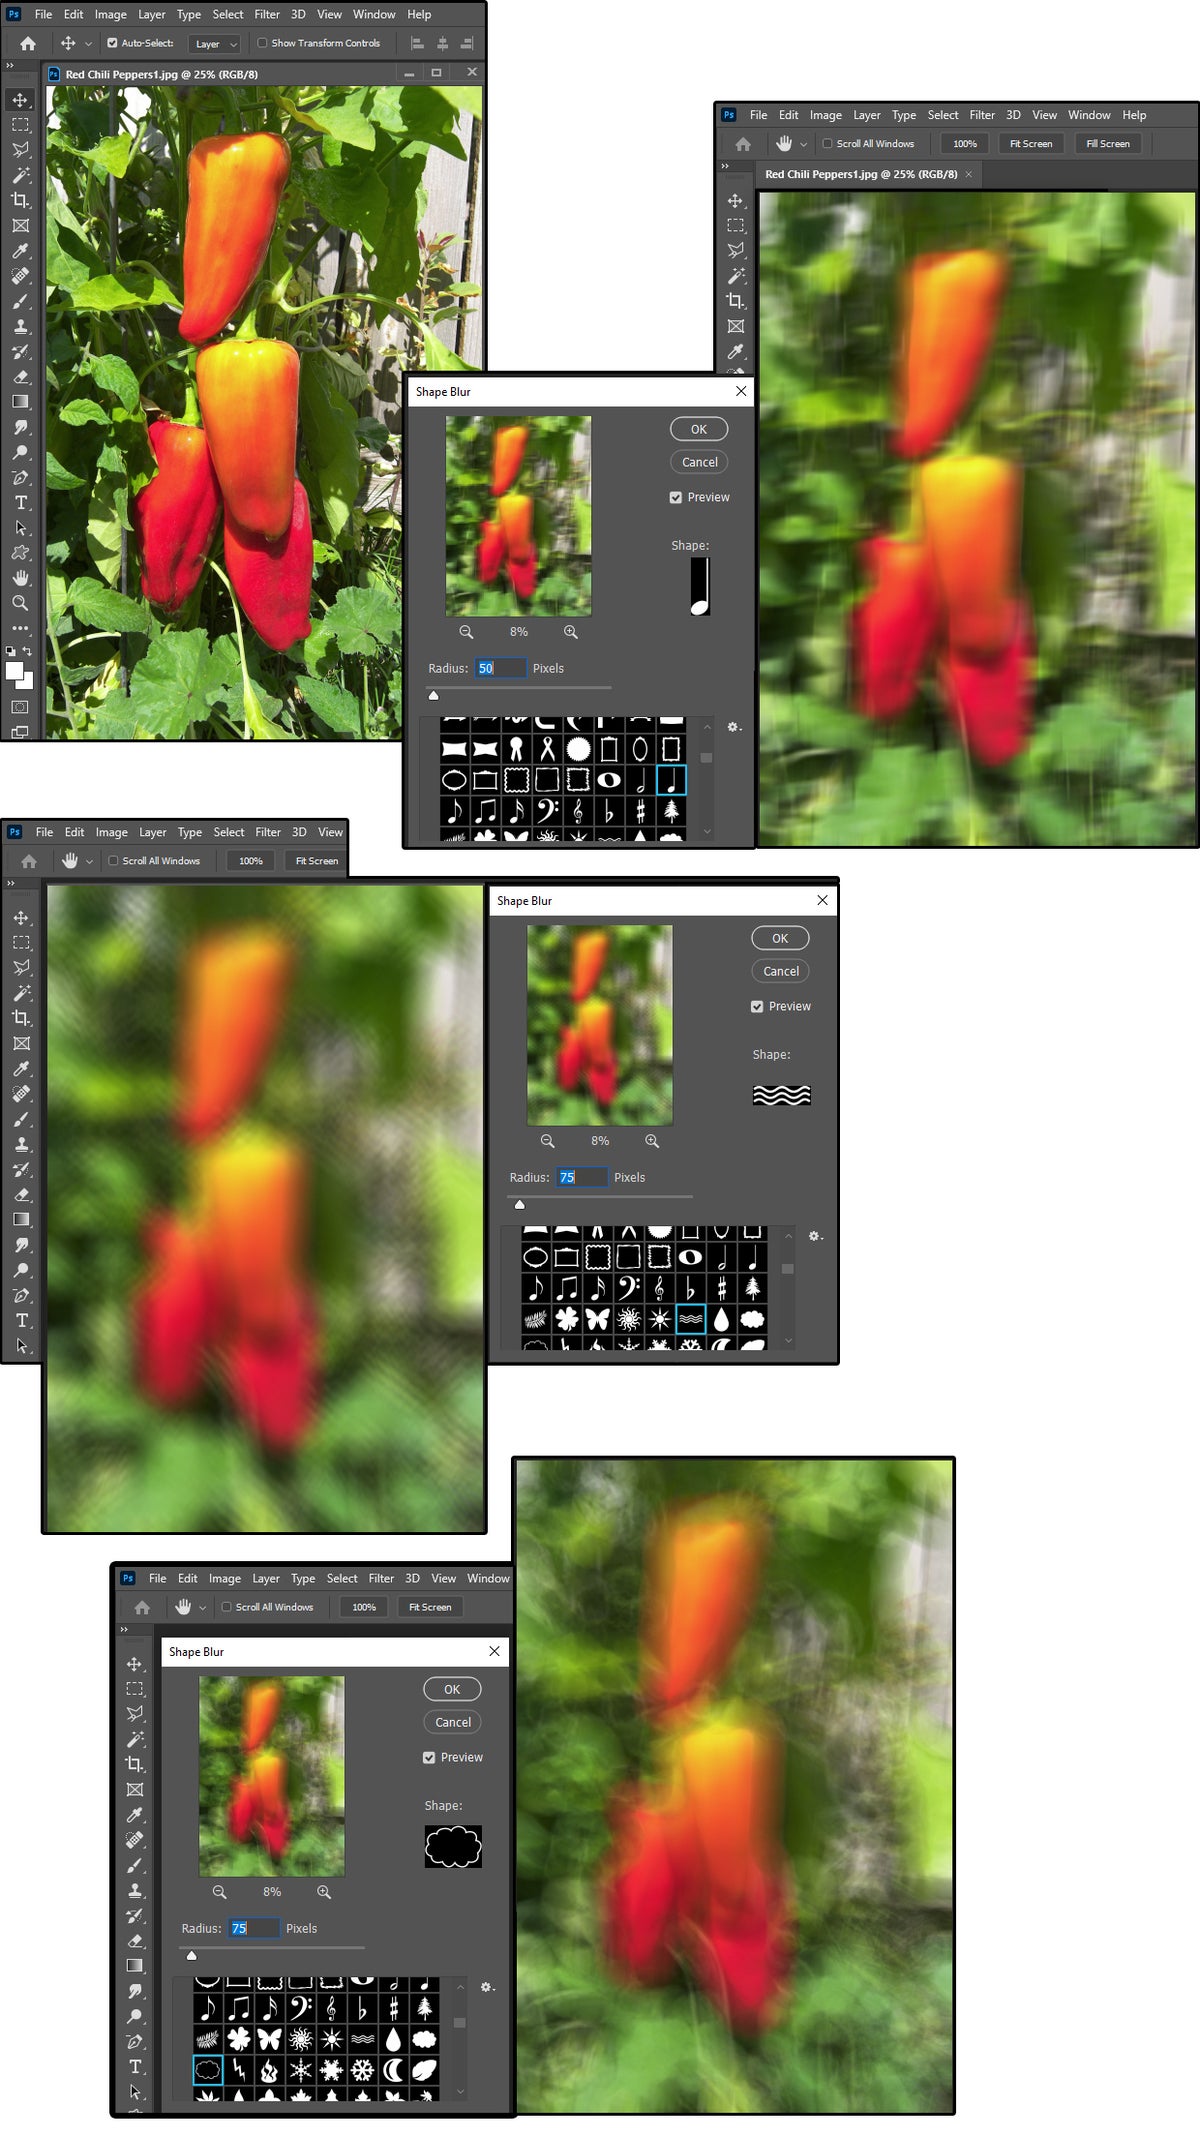 08 photoshops shape blur uses shape presets